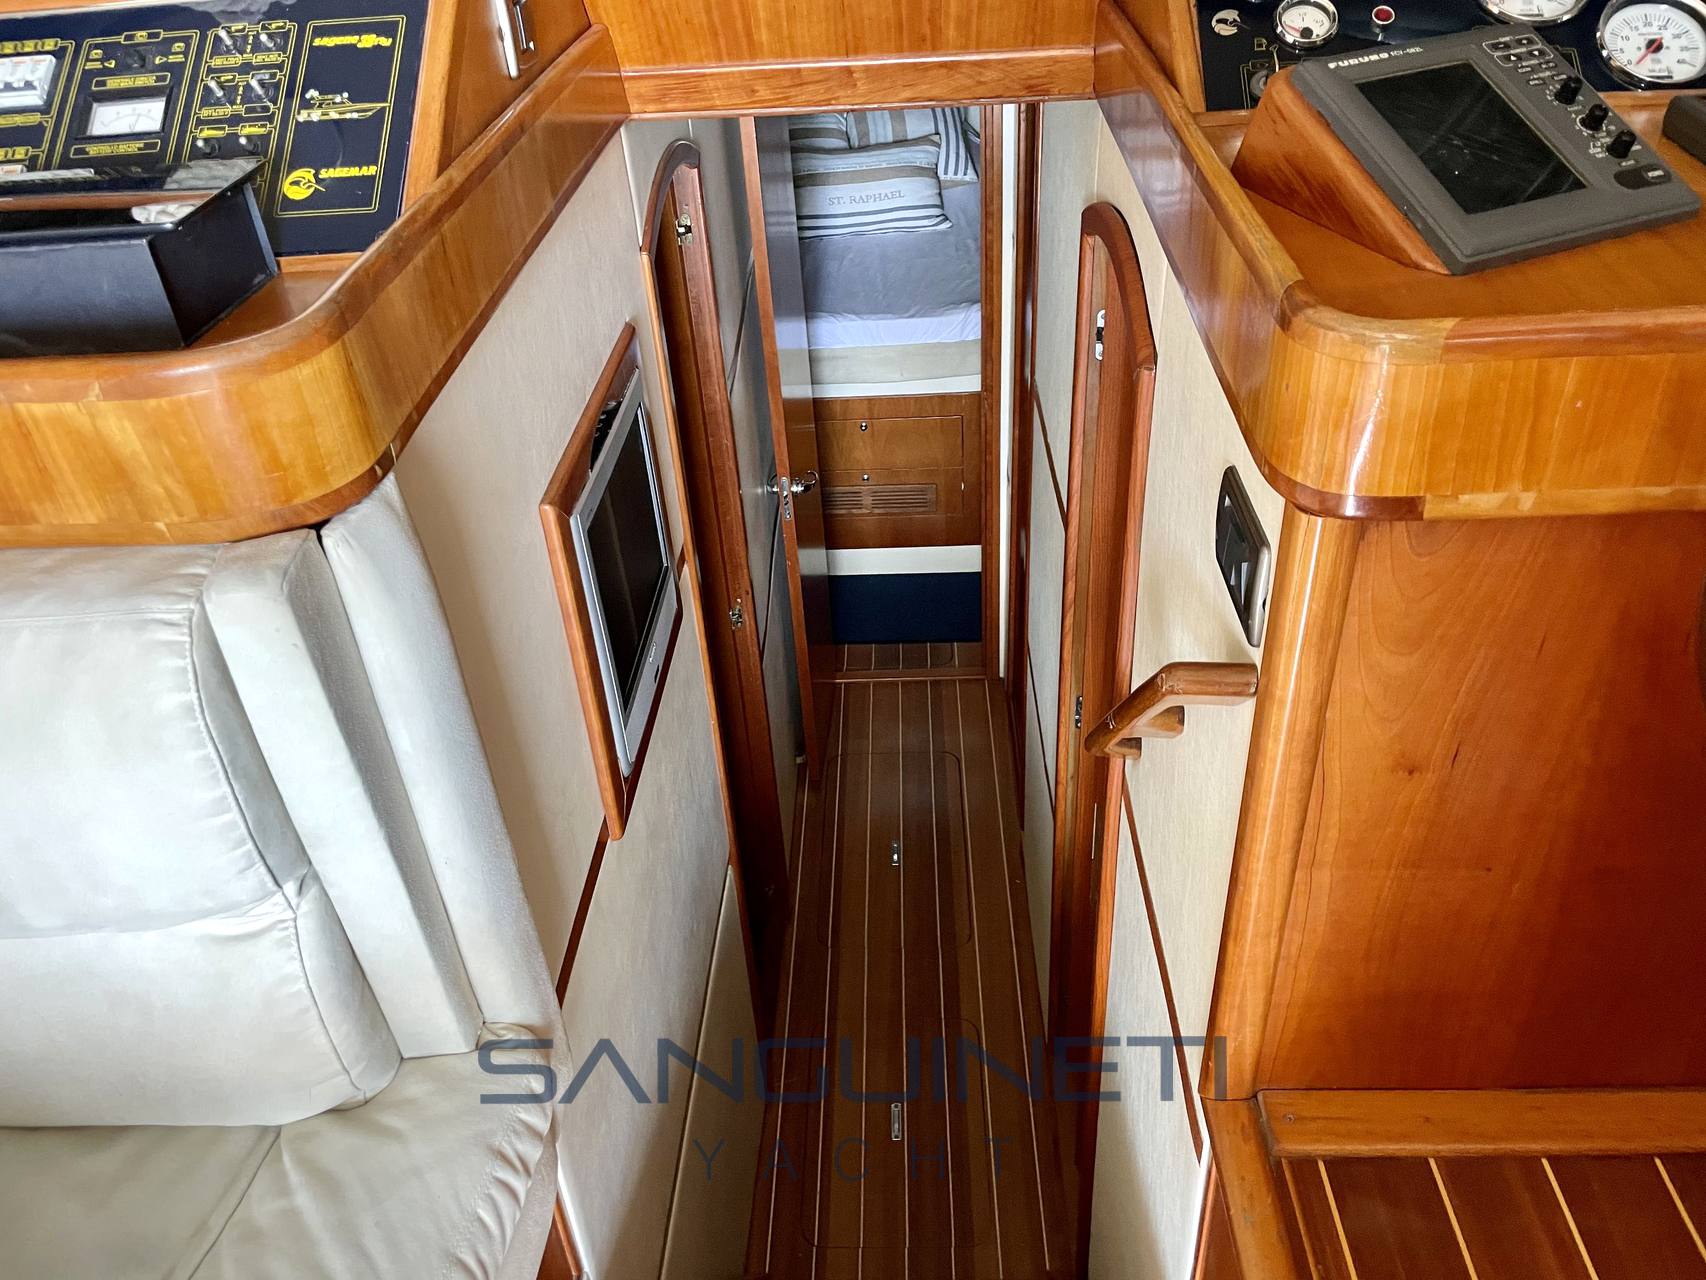 Sagemar Sagene 38 fly Motor boat used for sale